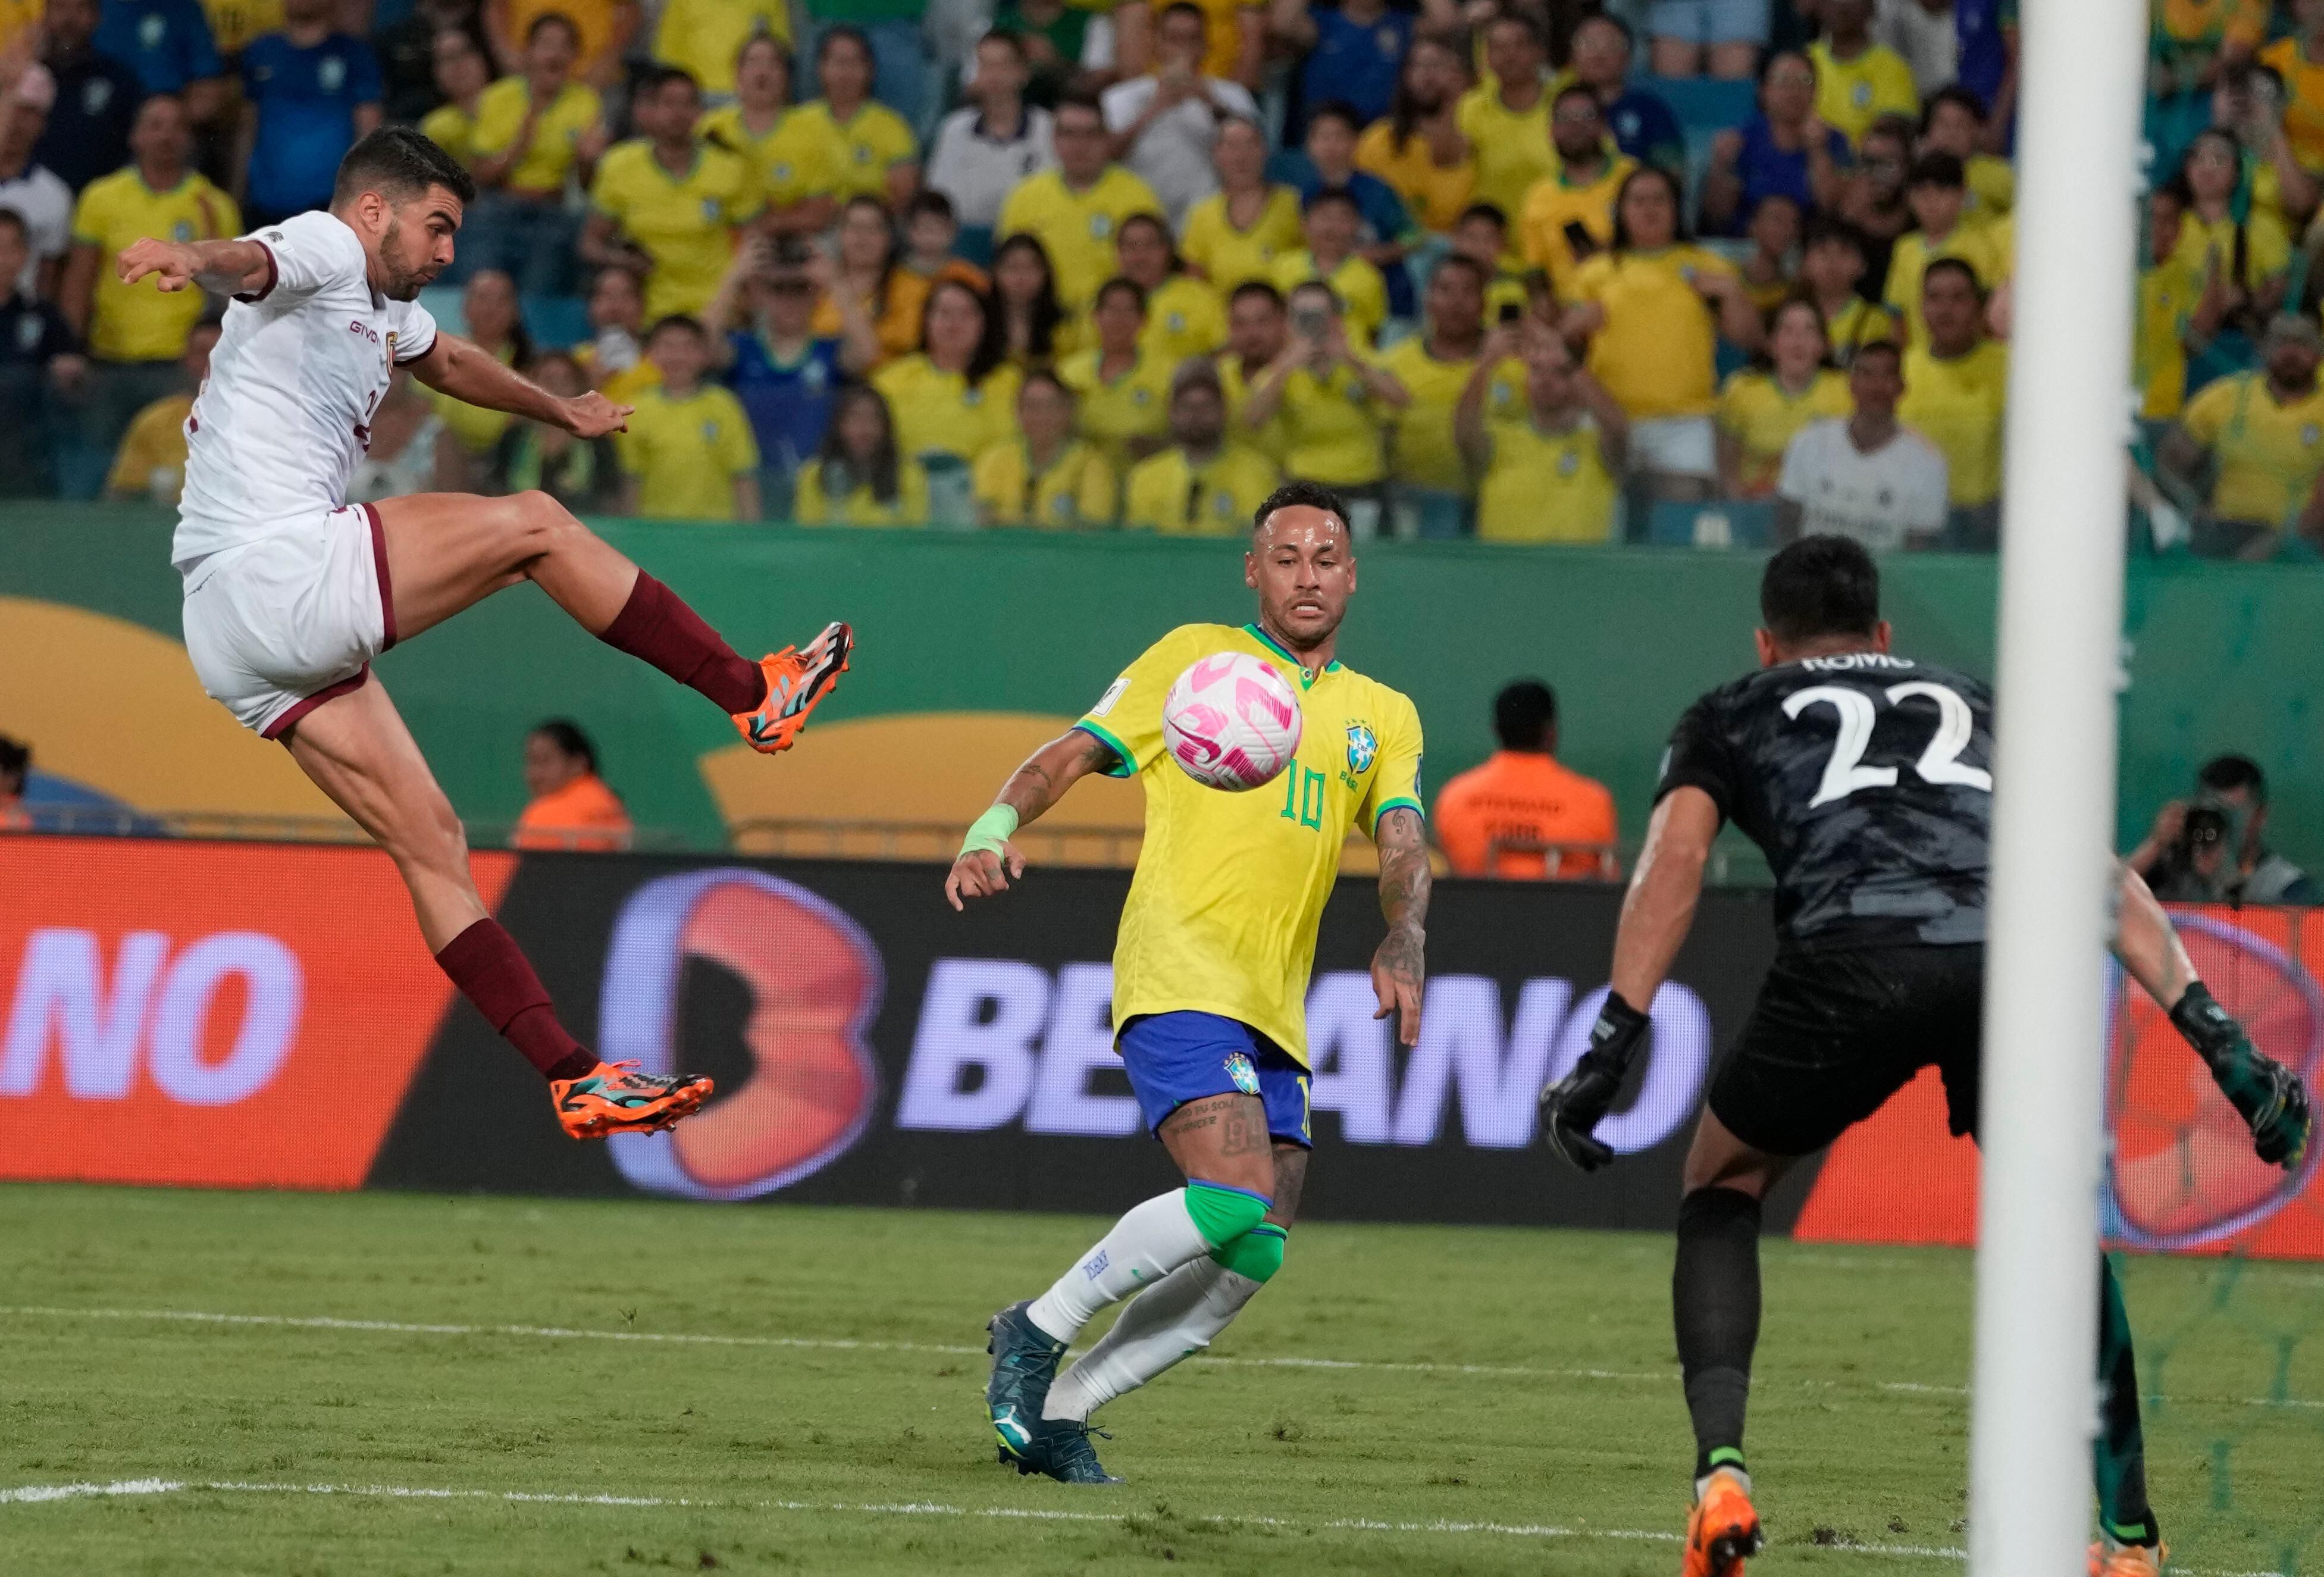 Eliminatórias: como foram os últimos jogos entre Brasil e Venezuela?